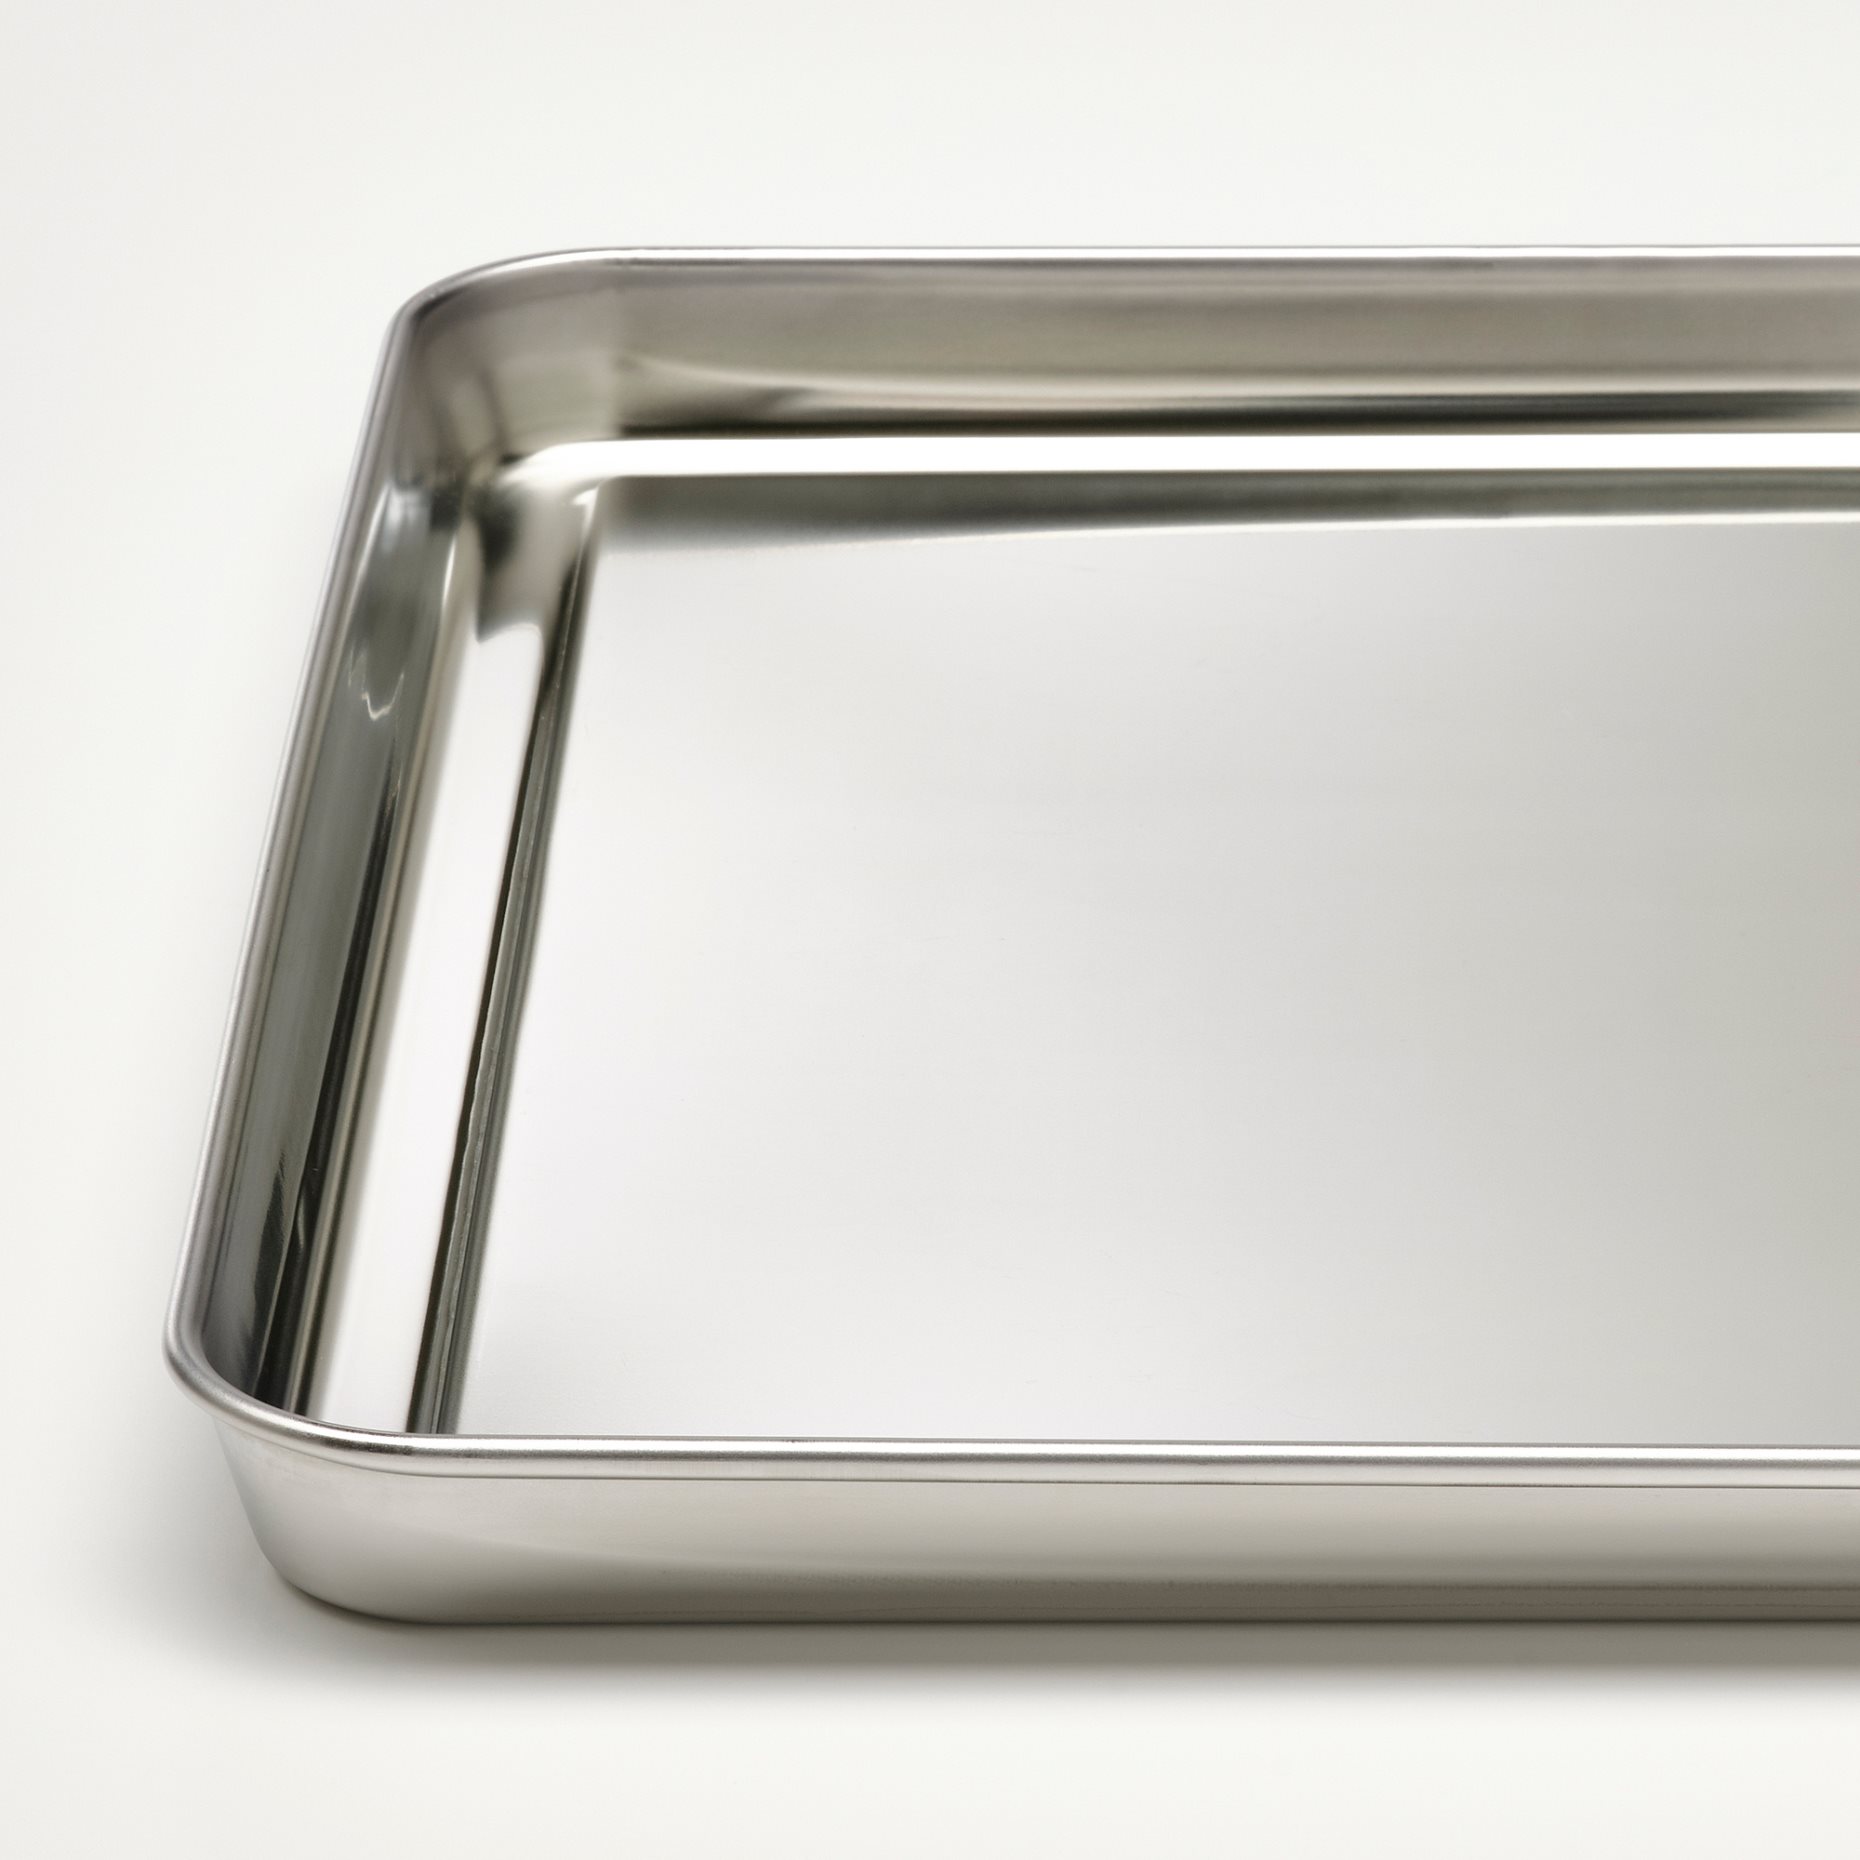 GRILLTIDER, serving tray, 40x30 cm, 305.647.43